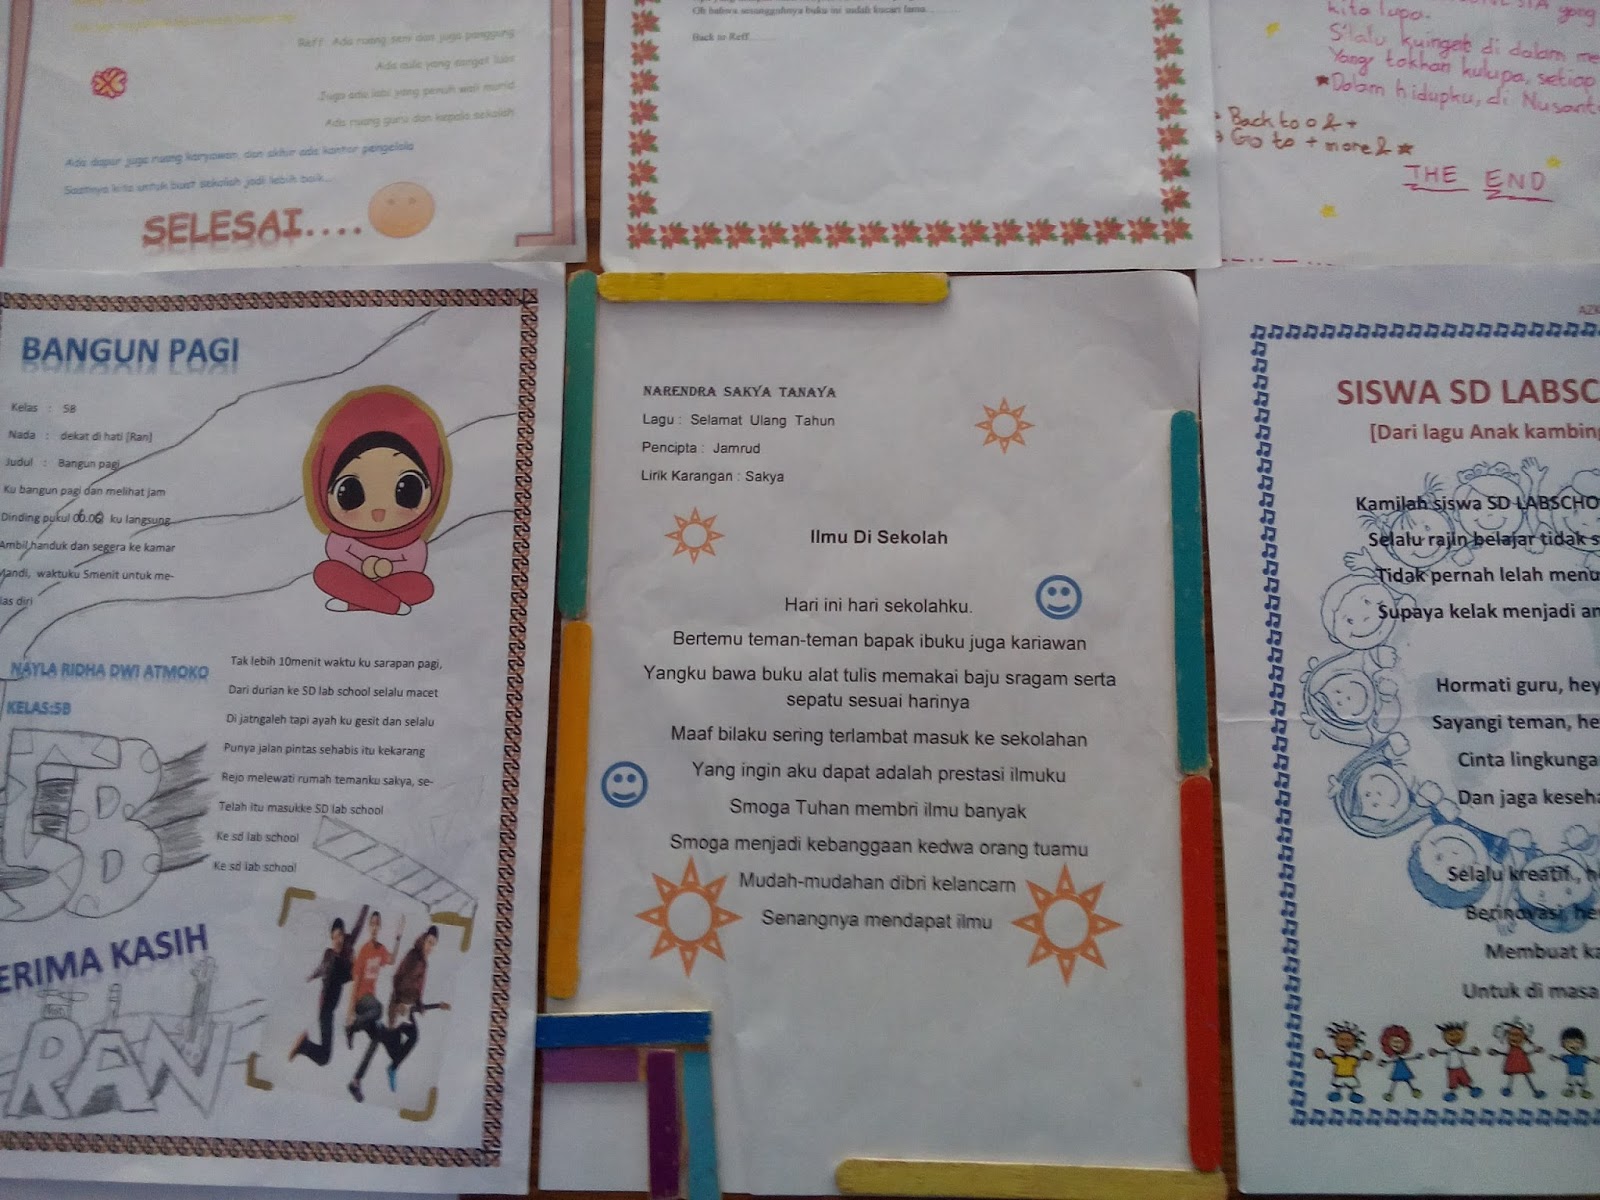 Minggu minggu ini anak anak kelas lima dan kelas enam sibuk menulis lirik lagu Sebenarnya dalam pembelajaran bahasa Indonesia baik kelas 5 maupun kelas 6